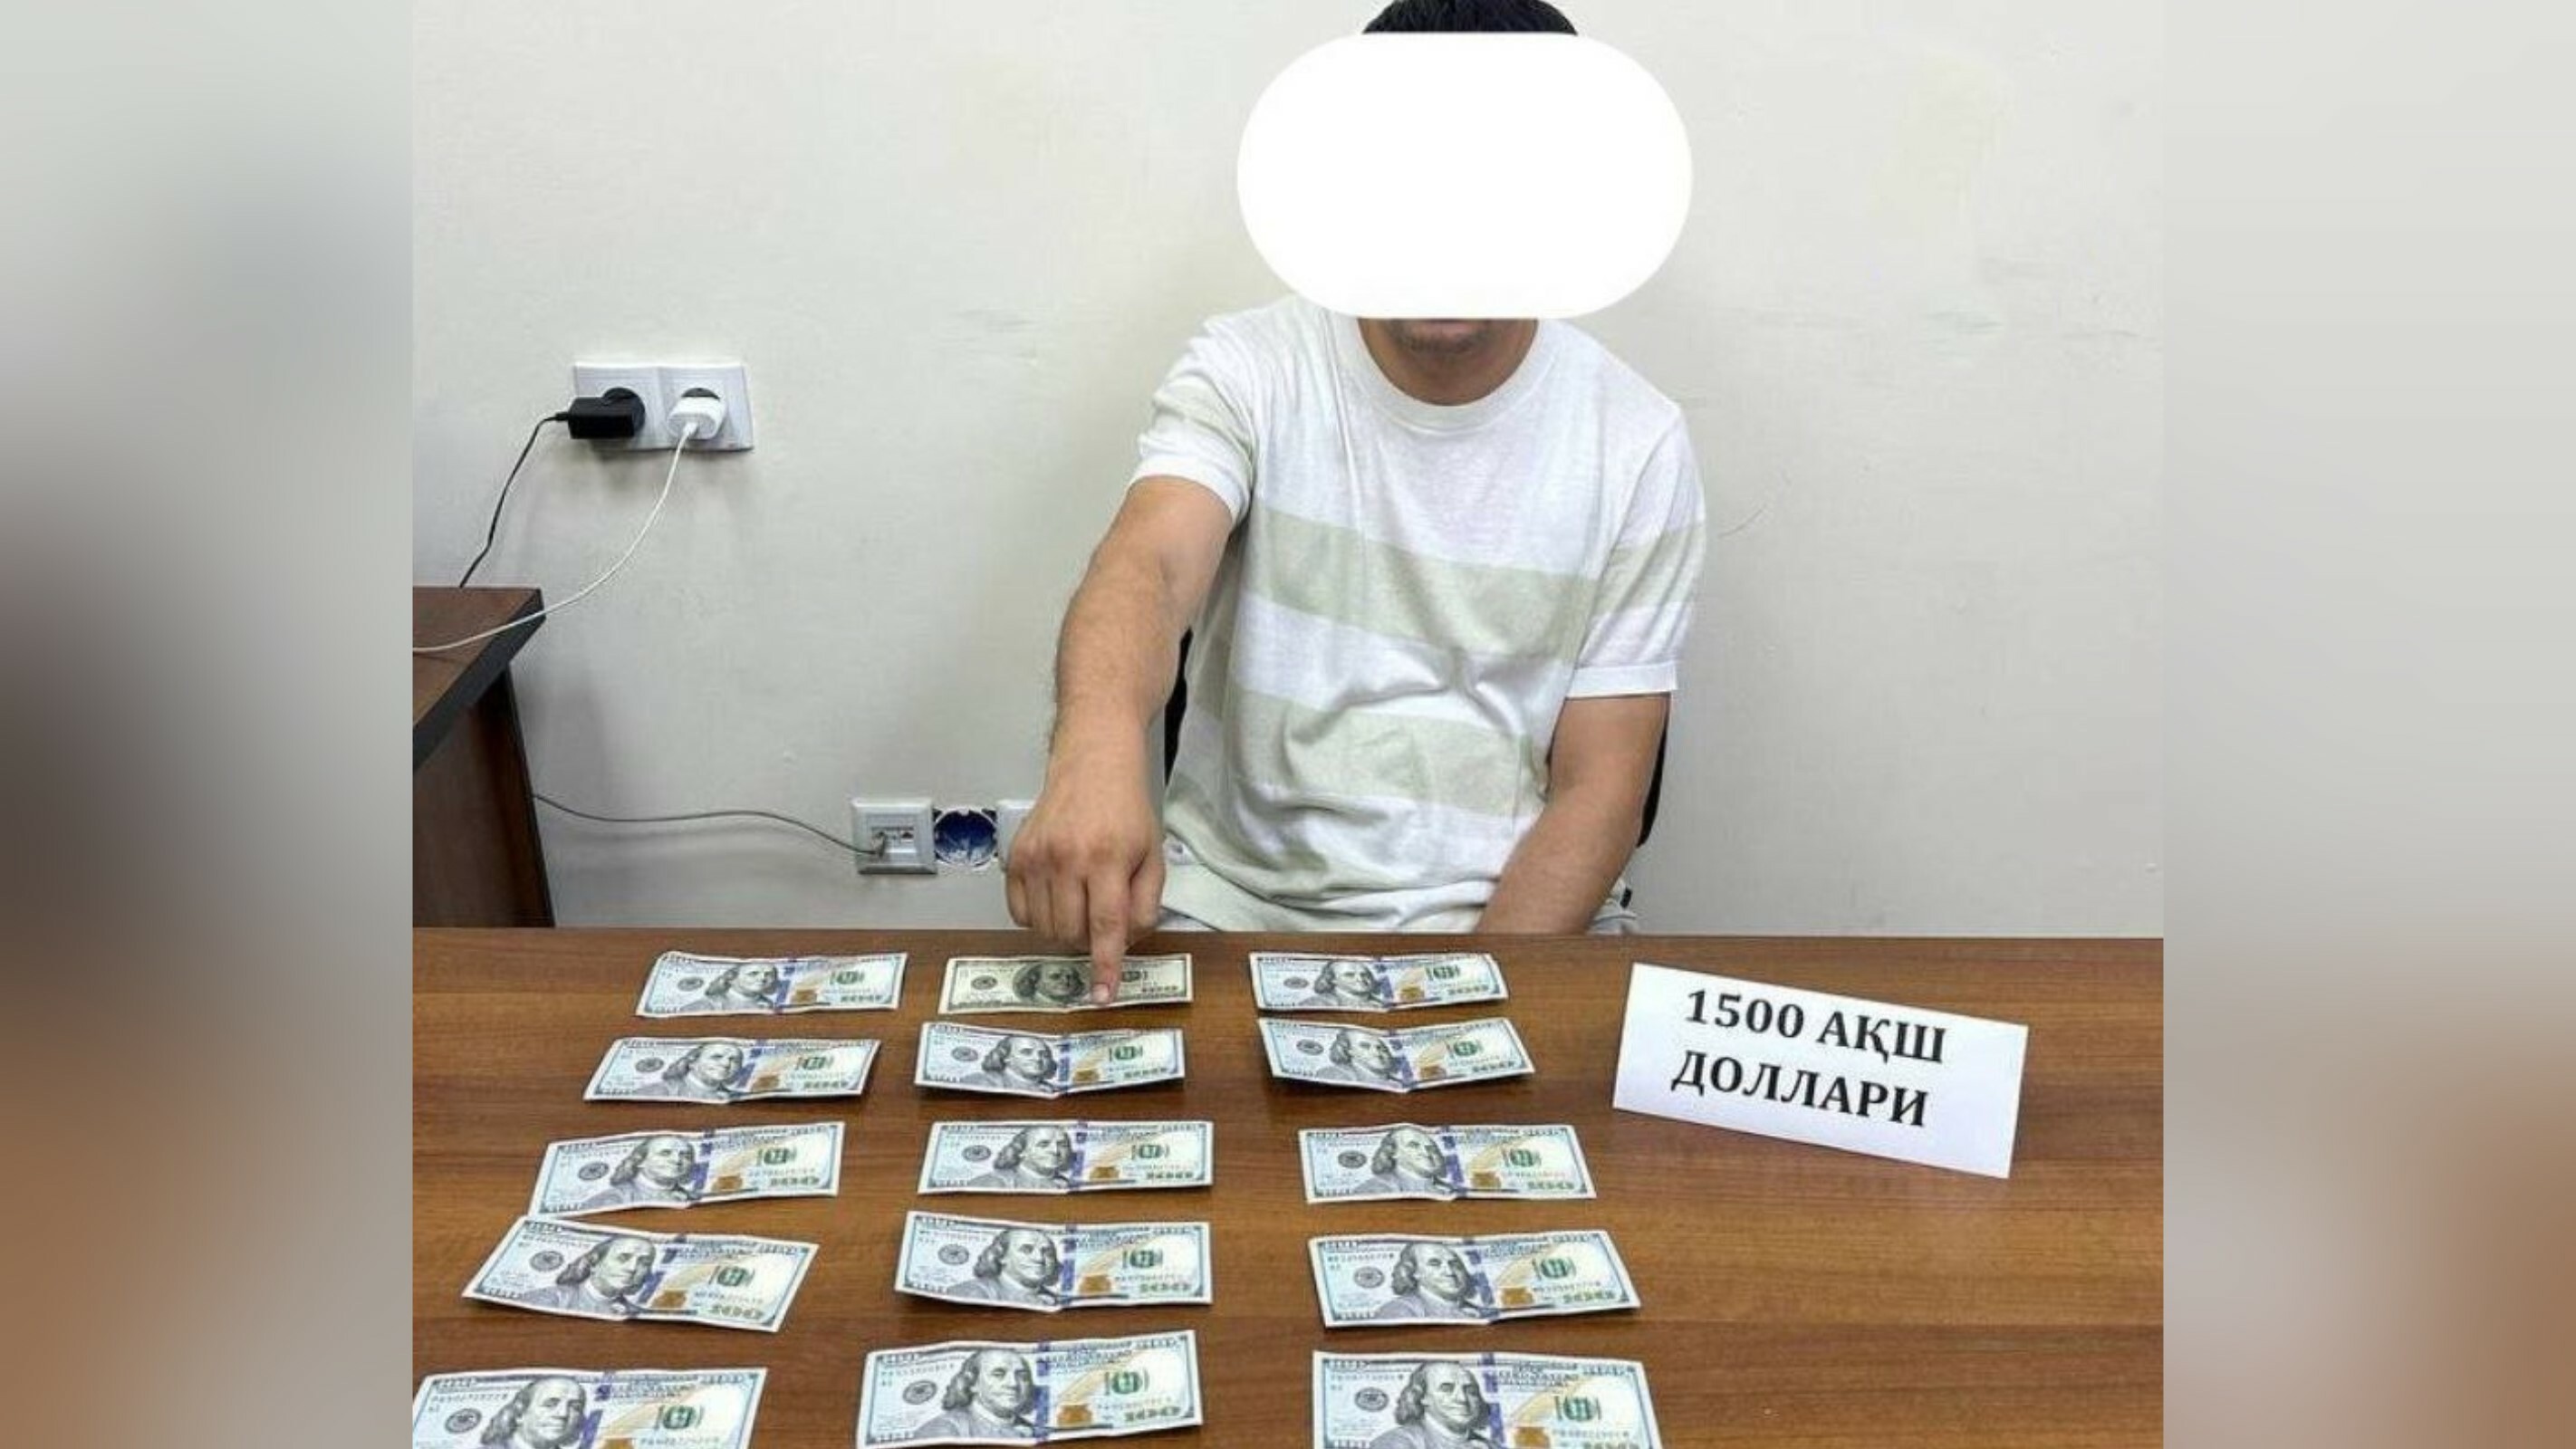 СГБ задержала в Ташкенте чиновника при получении взятки в $1500